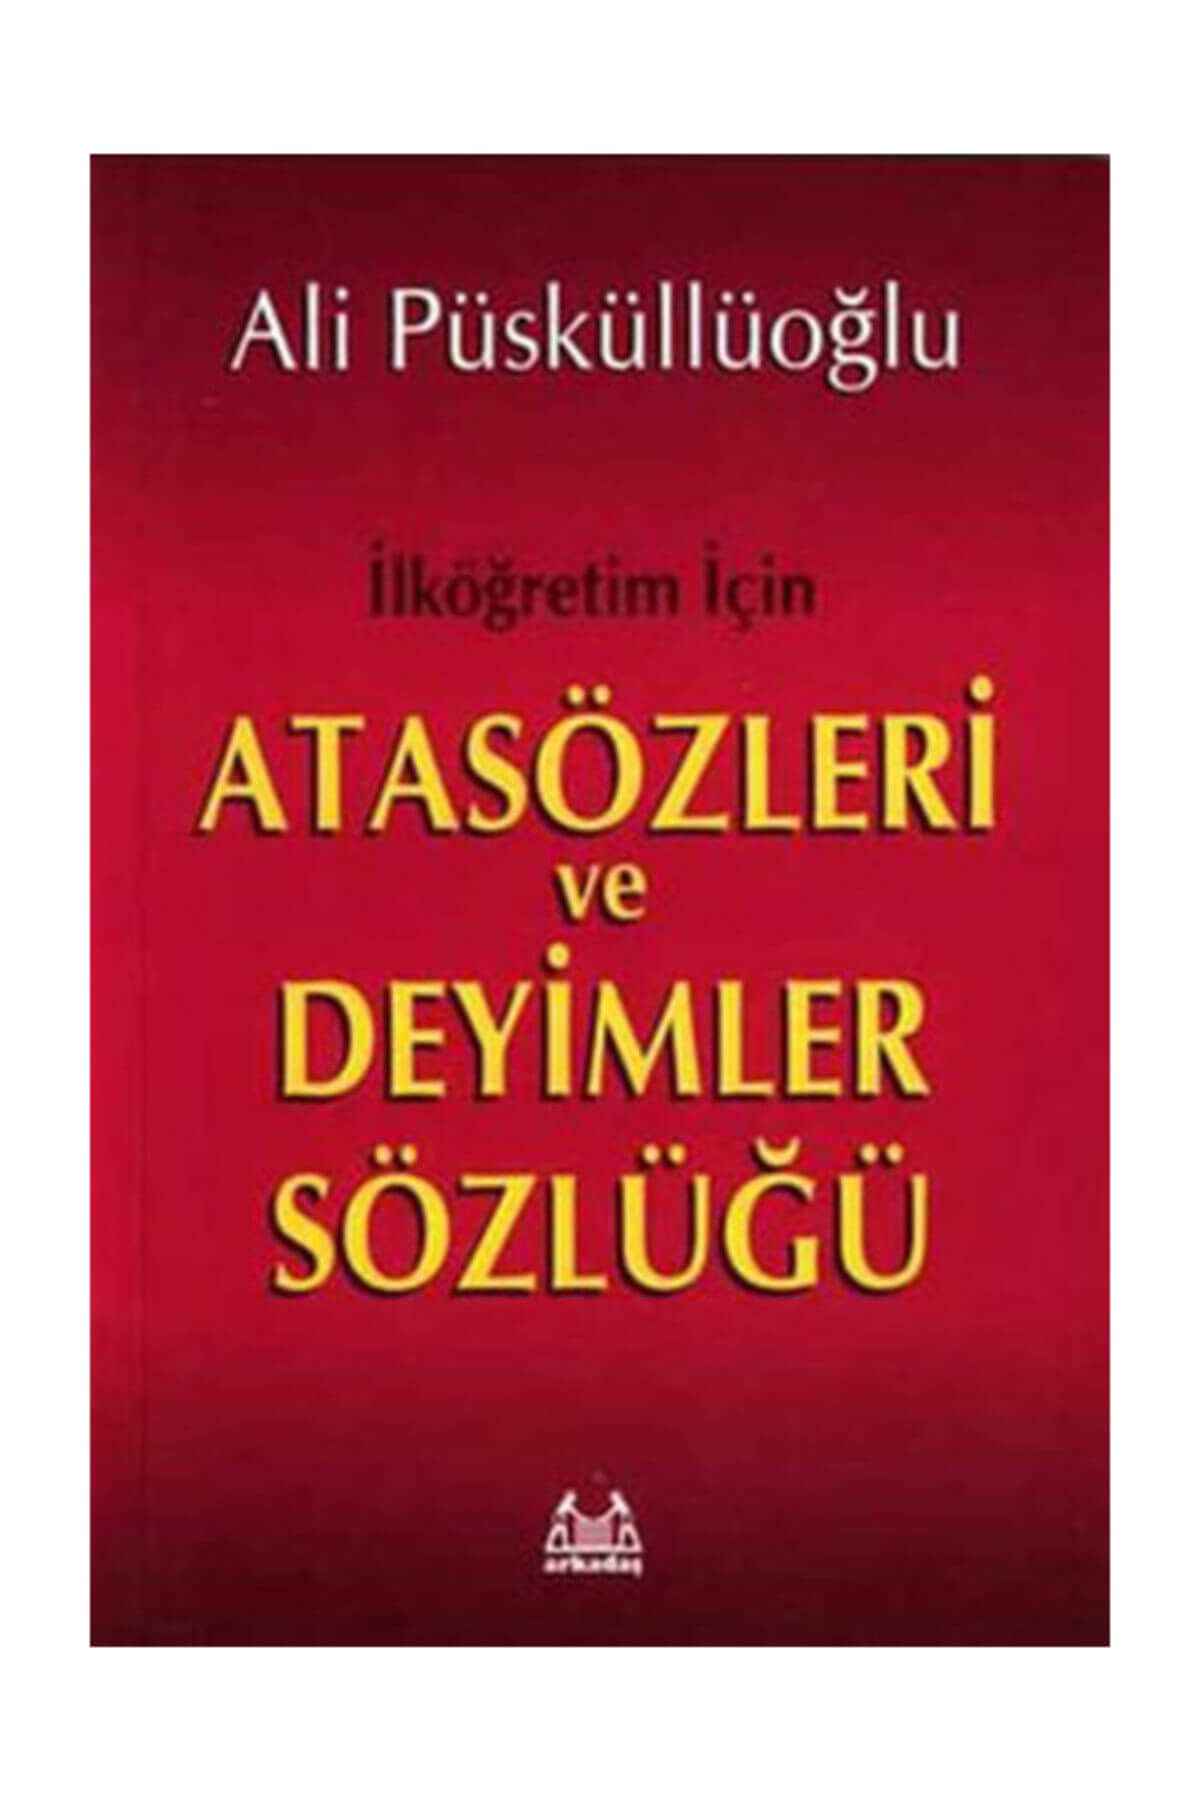 Arkadaş Yayıncılık İlköğretim İçin Atasözleri ve Deyimler Sözlüğü - Ali Püsküllüoğlu 9789755093864